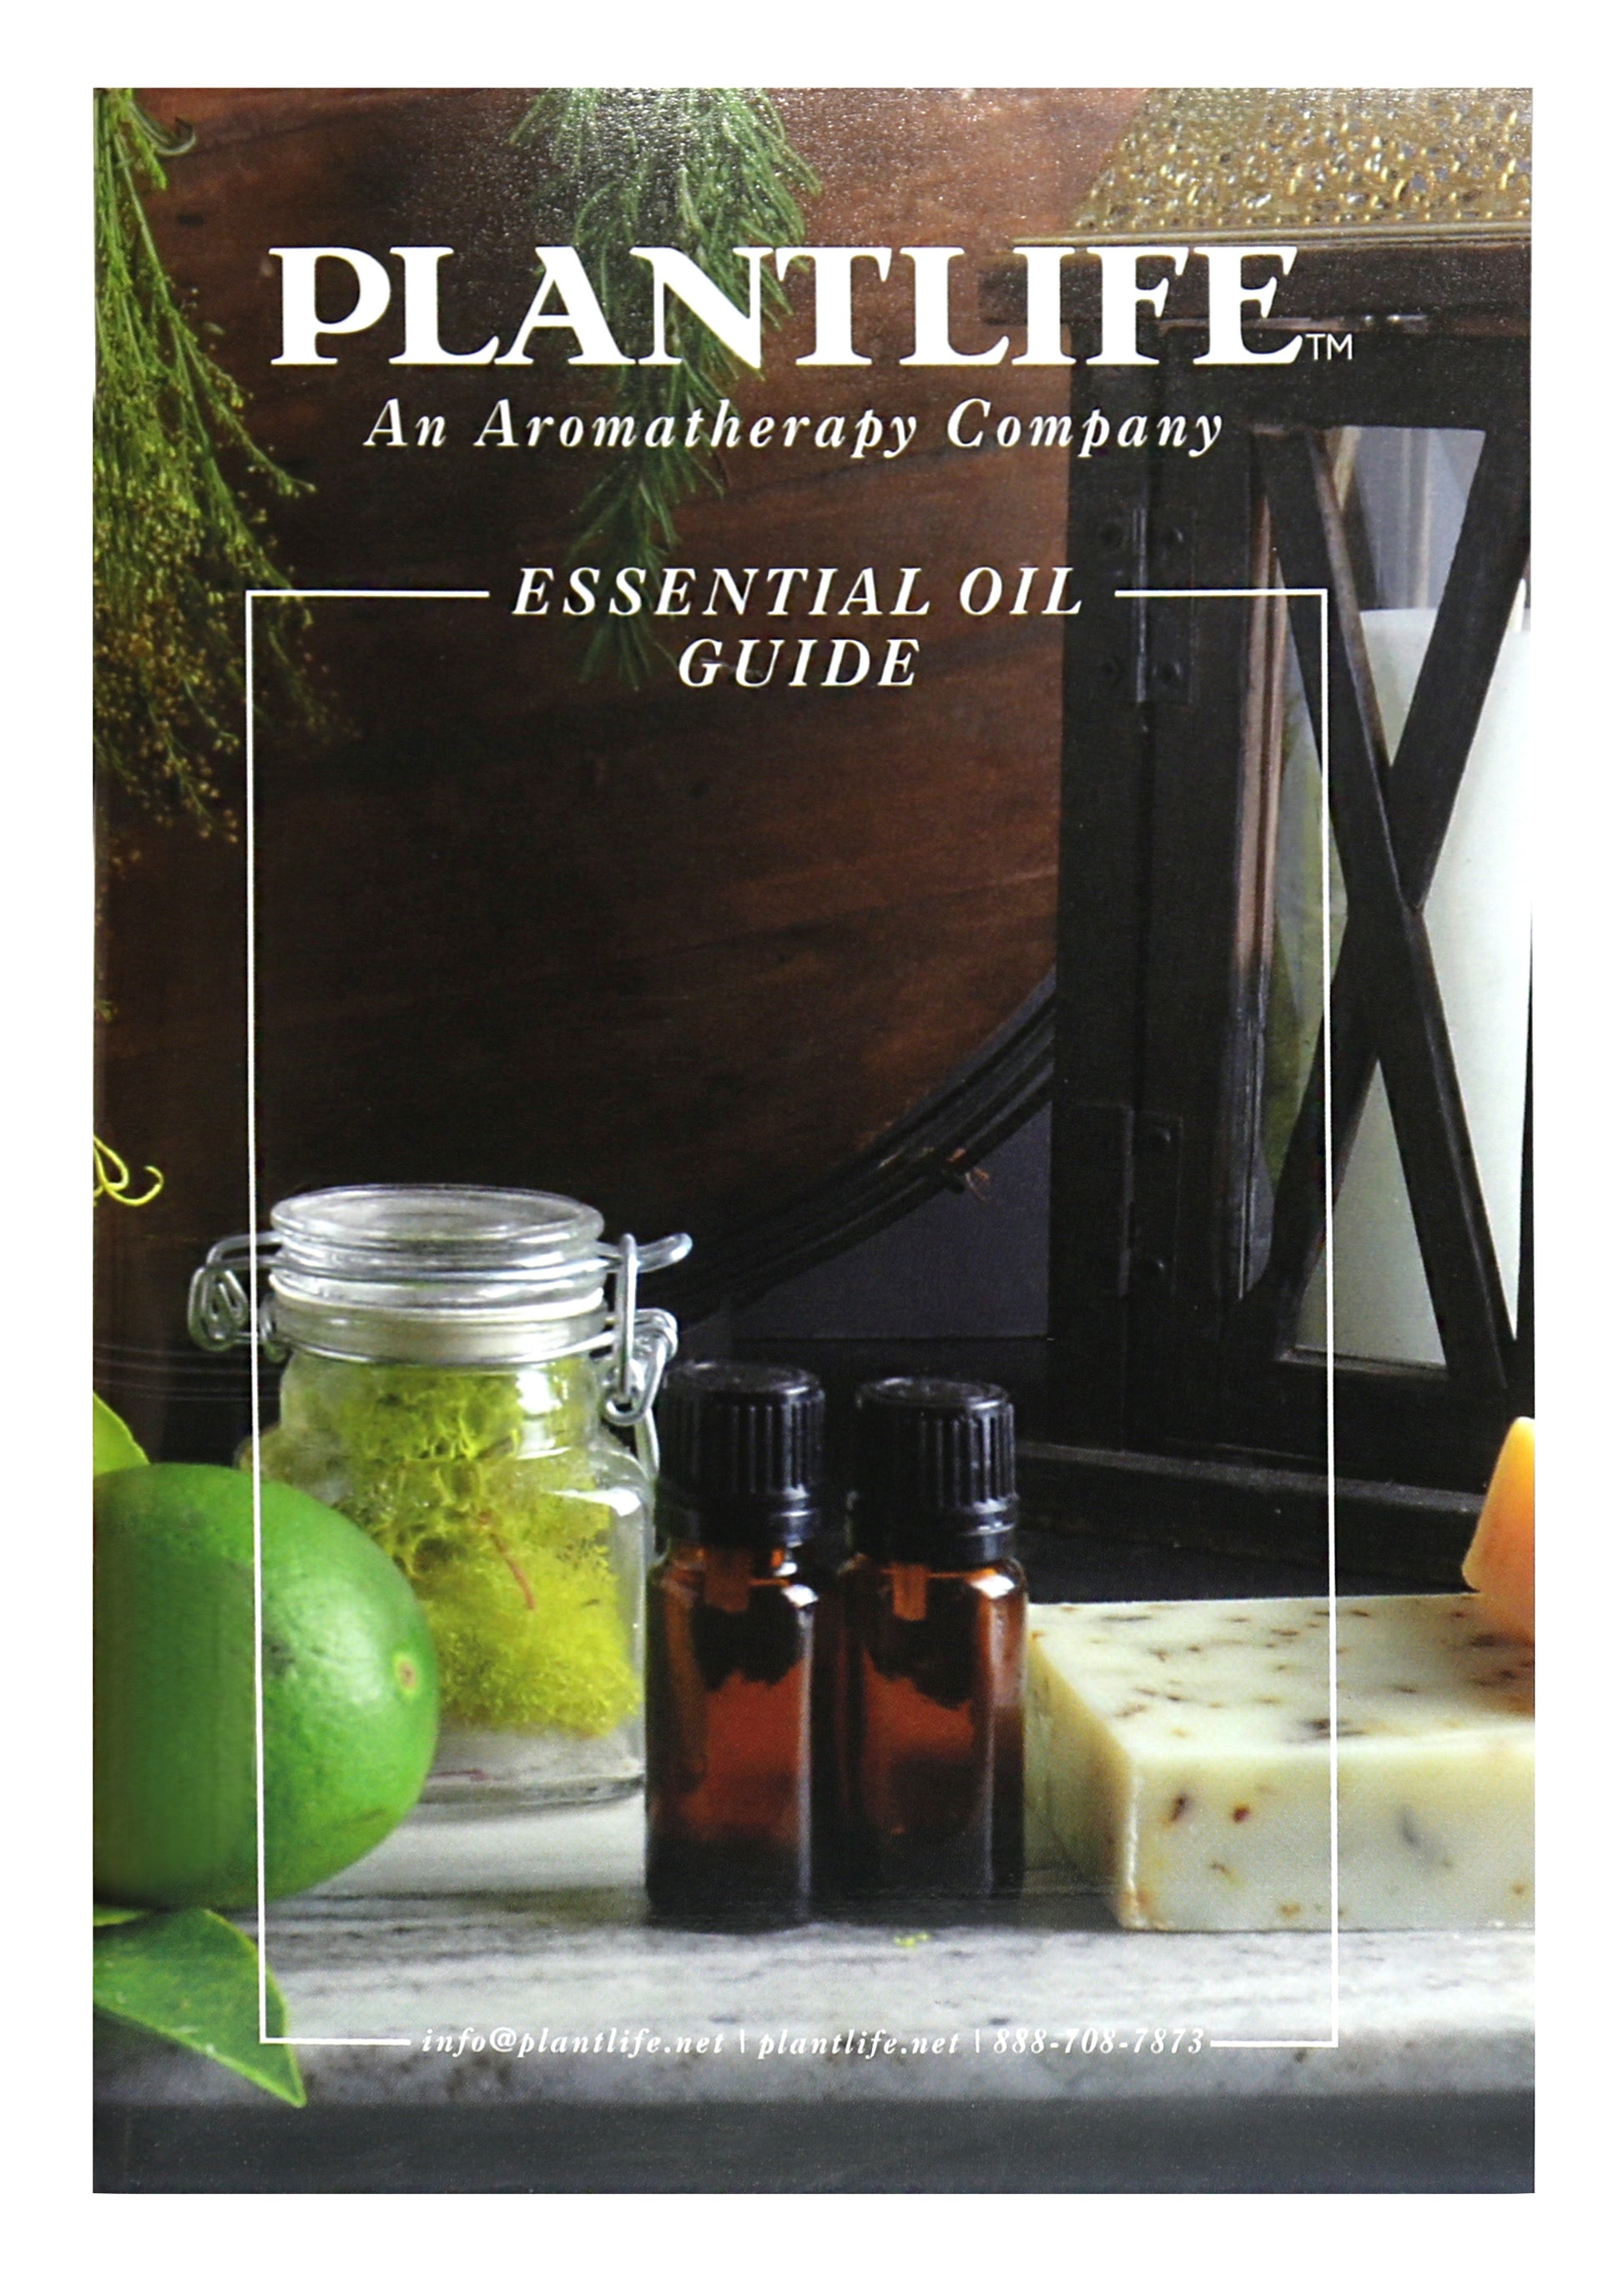 essential oils guide